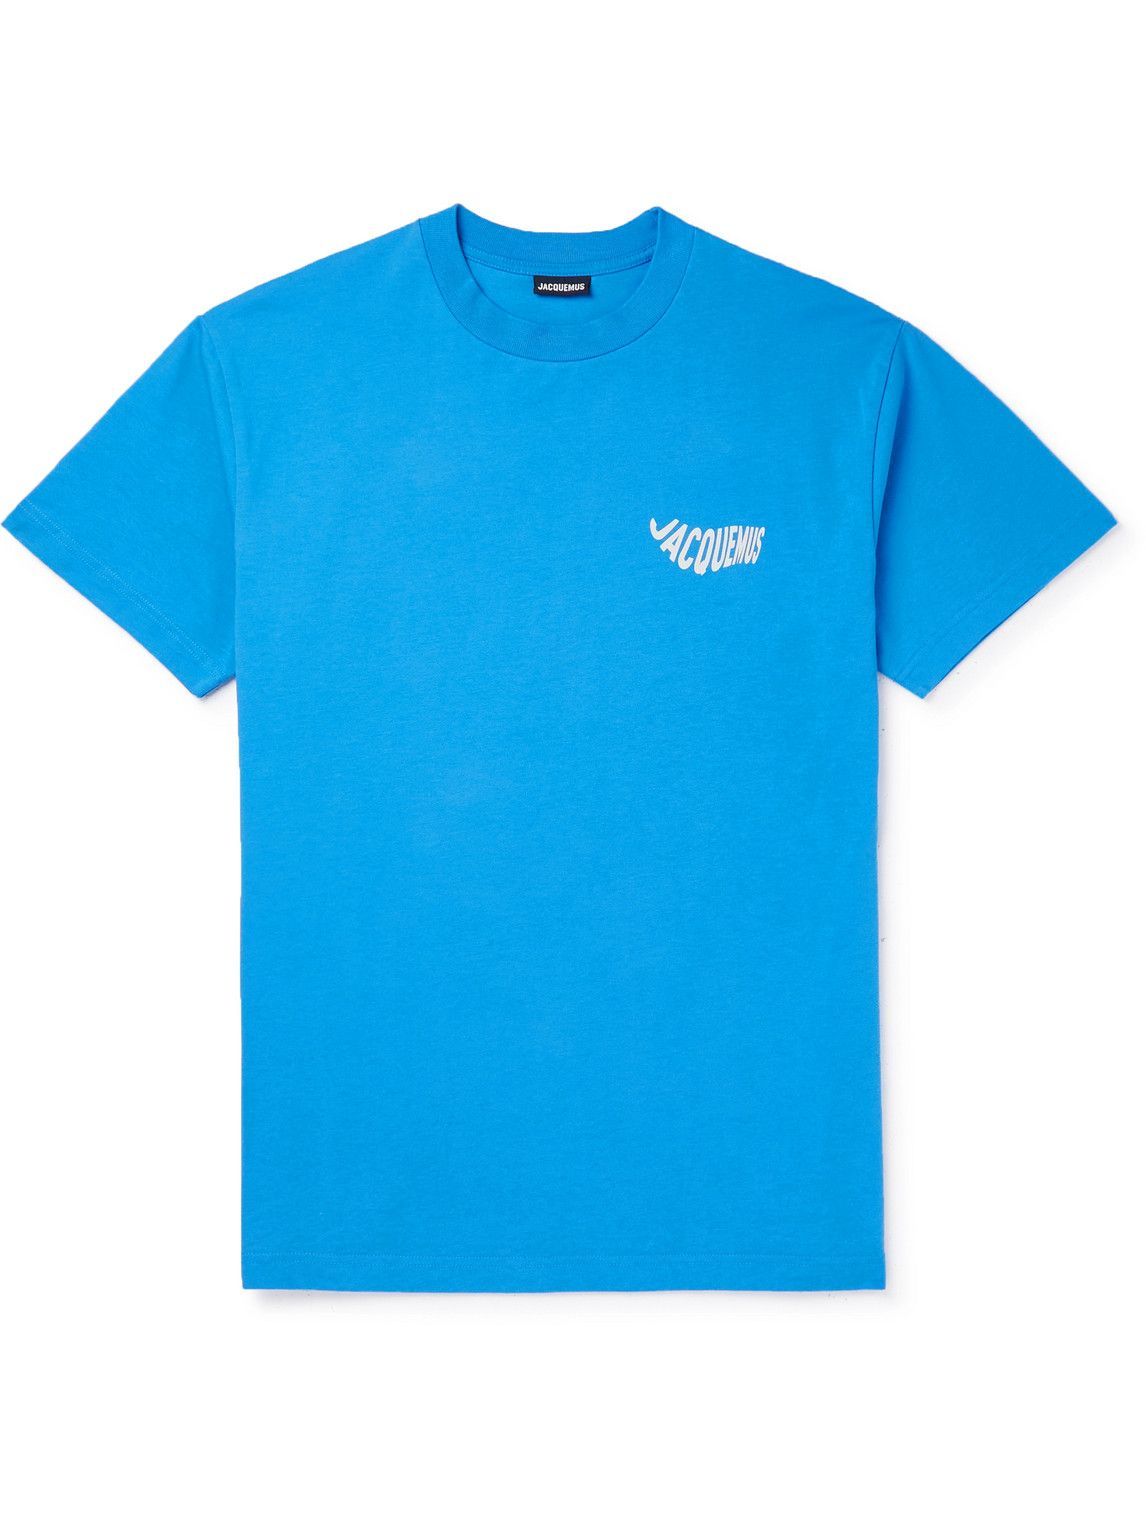 Jacquemus - Vague Logo-Print Cotton-Jersey T-Shirt - Blue Jacquemus